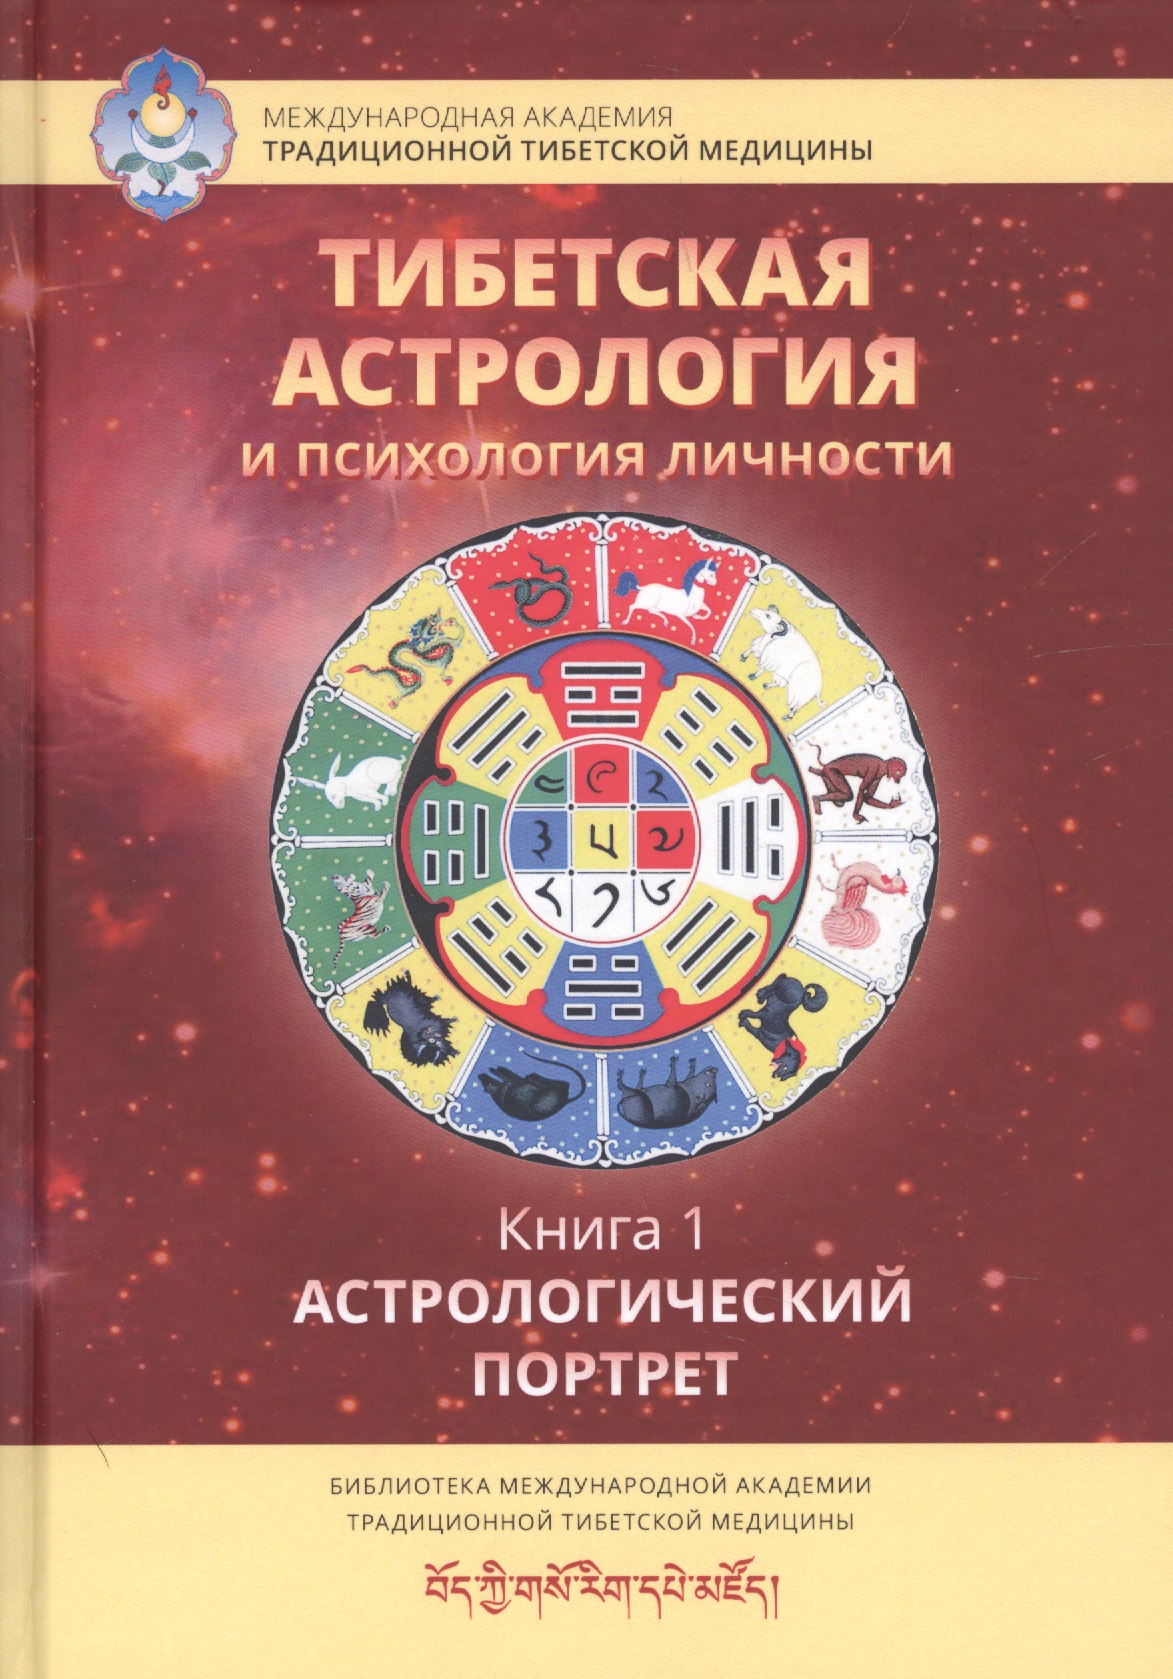 доржи лобсанг основы тибетской астрологии Тибетская астрология и психология личности. Книга 1. Астрологический портрет